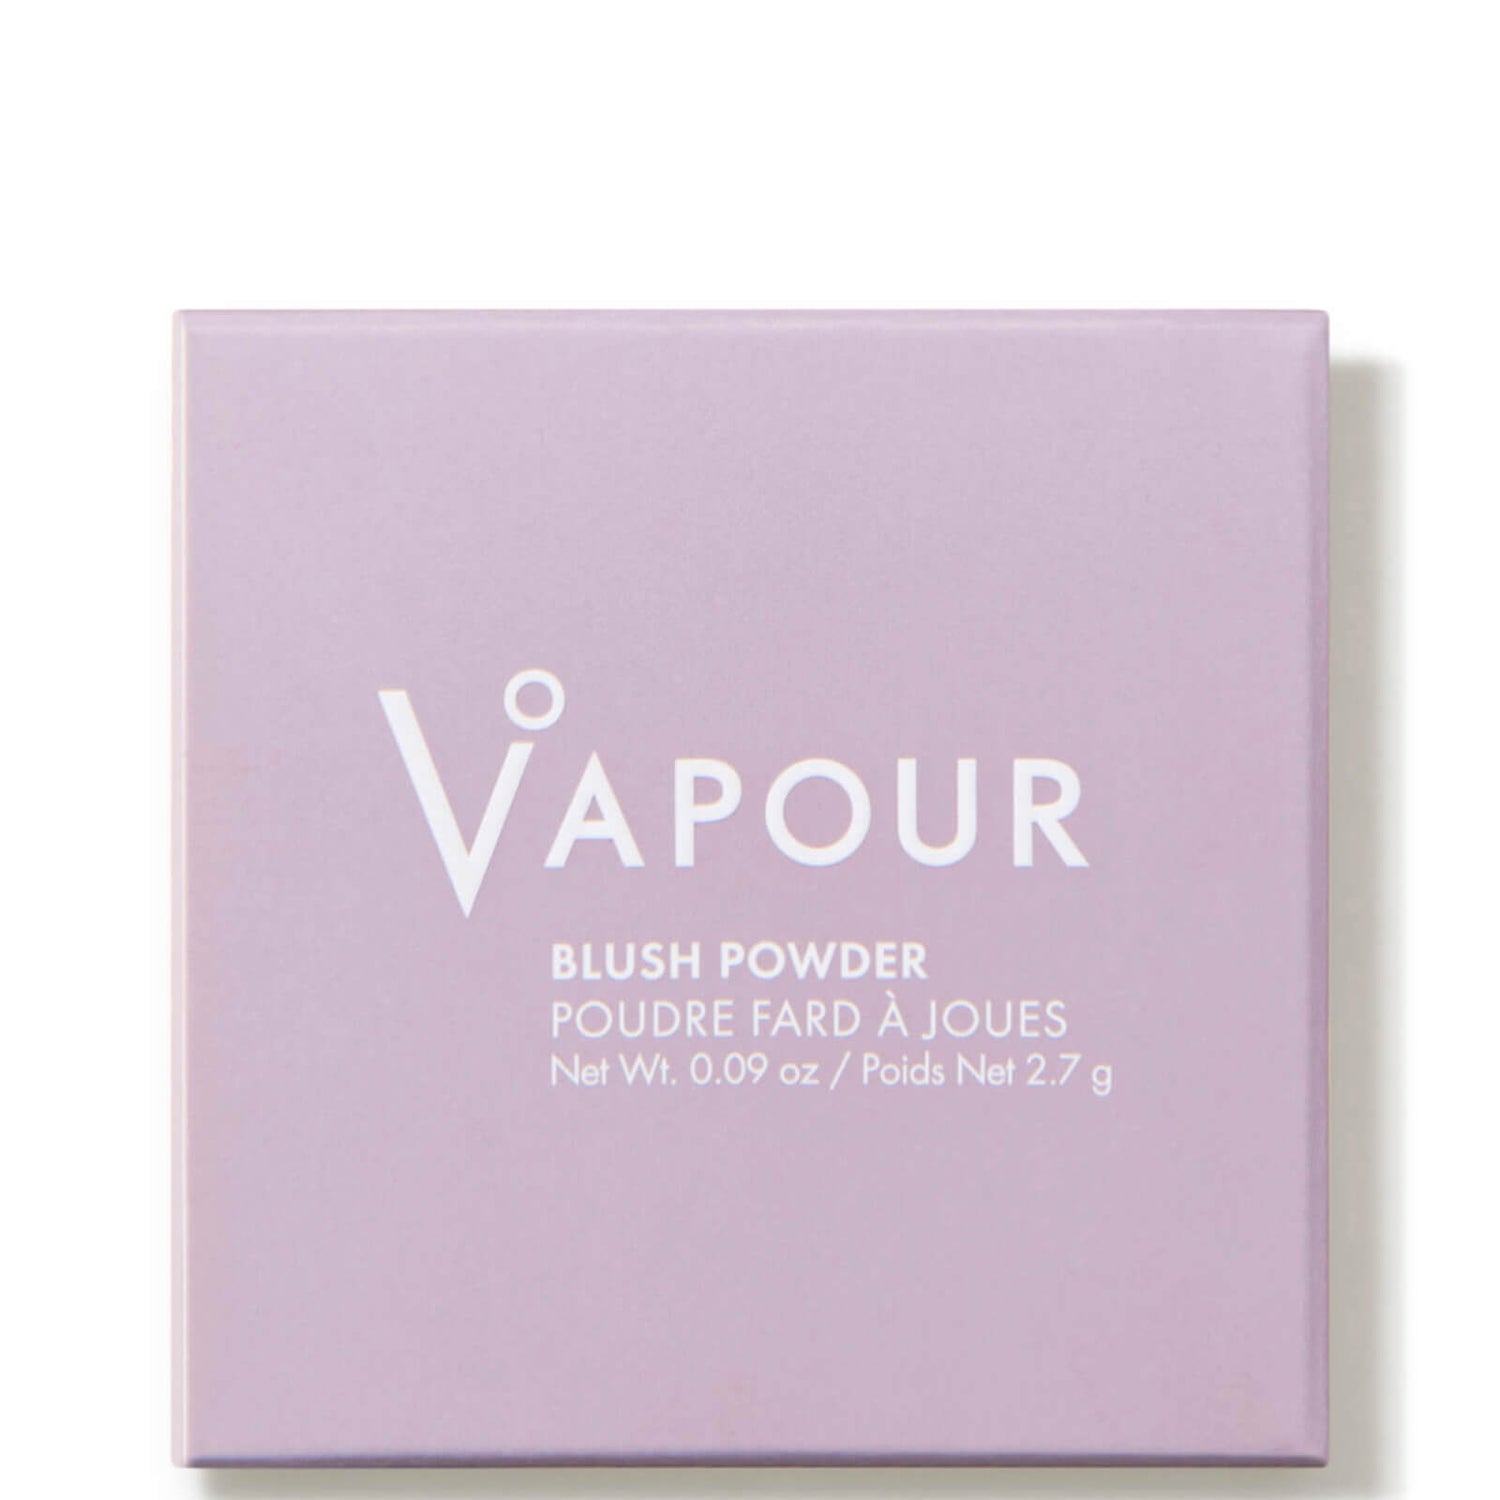 Vapour Beauty Blush Powder 0.09 oz.